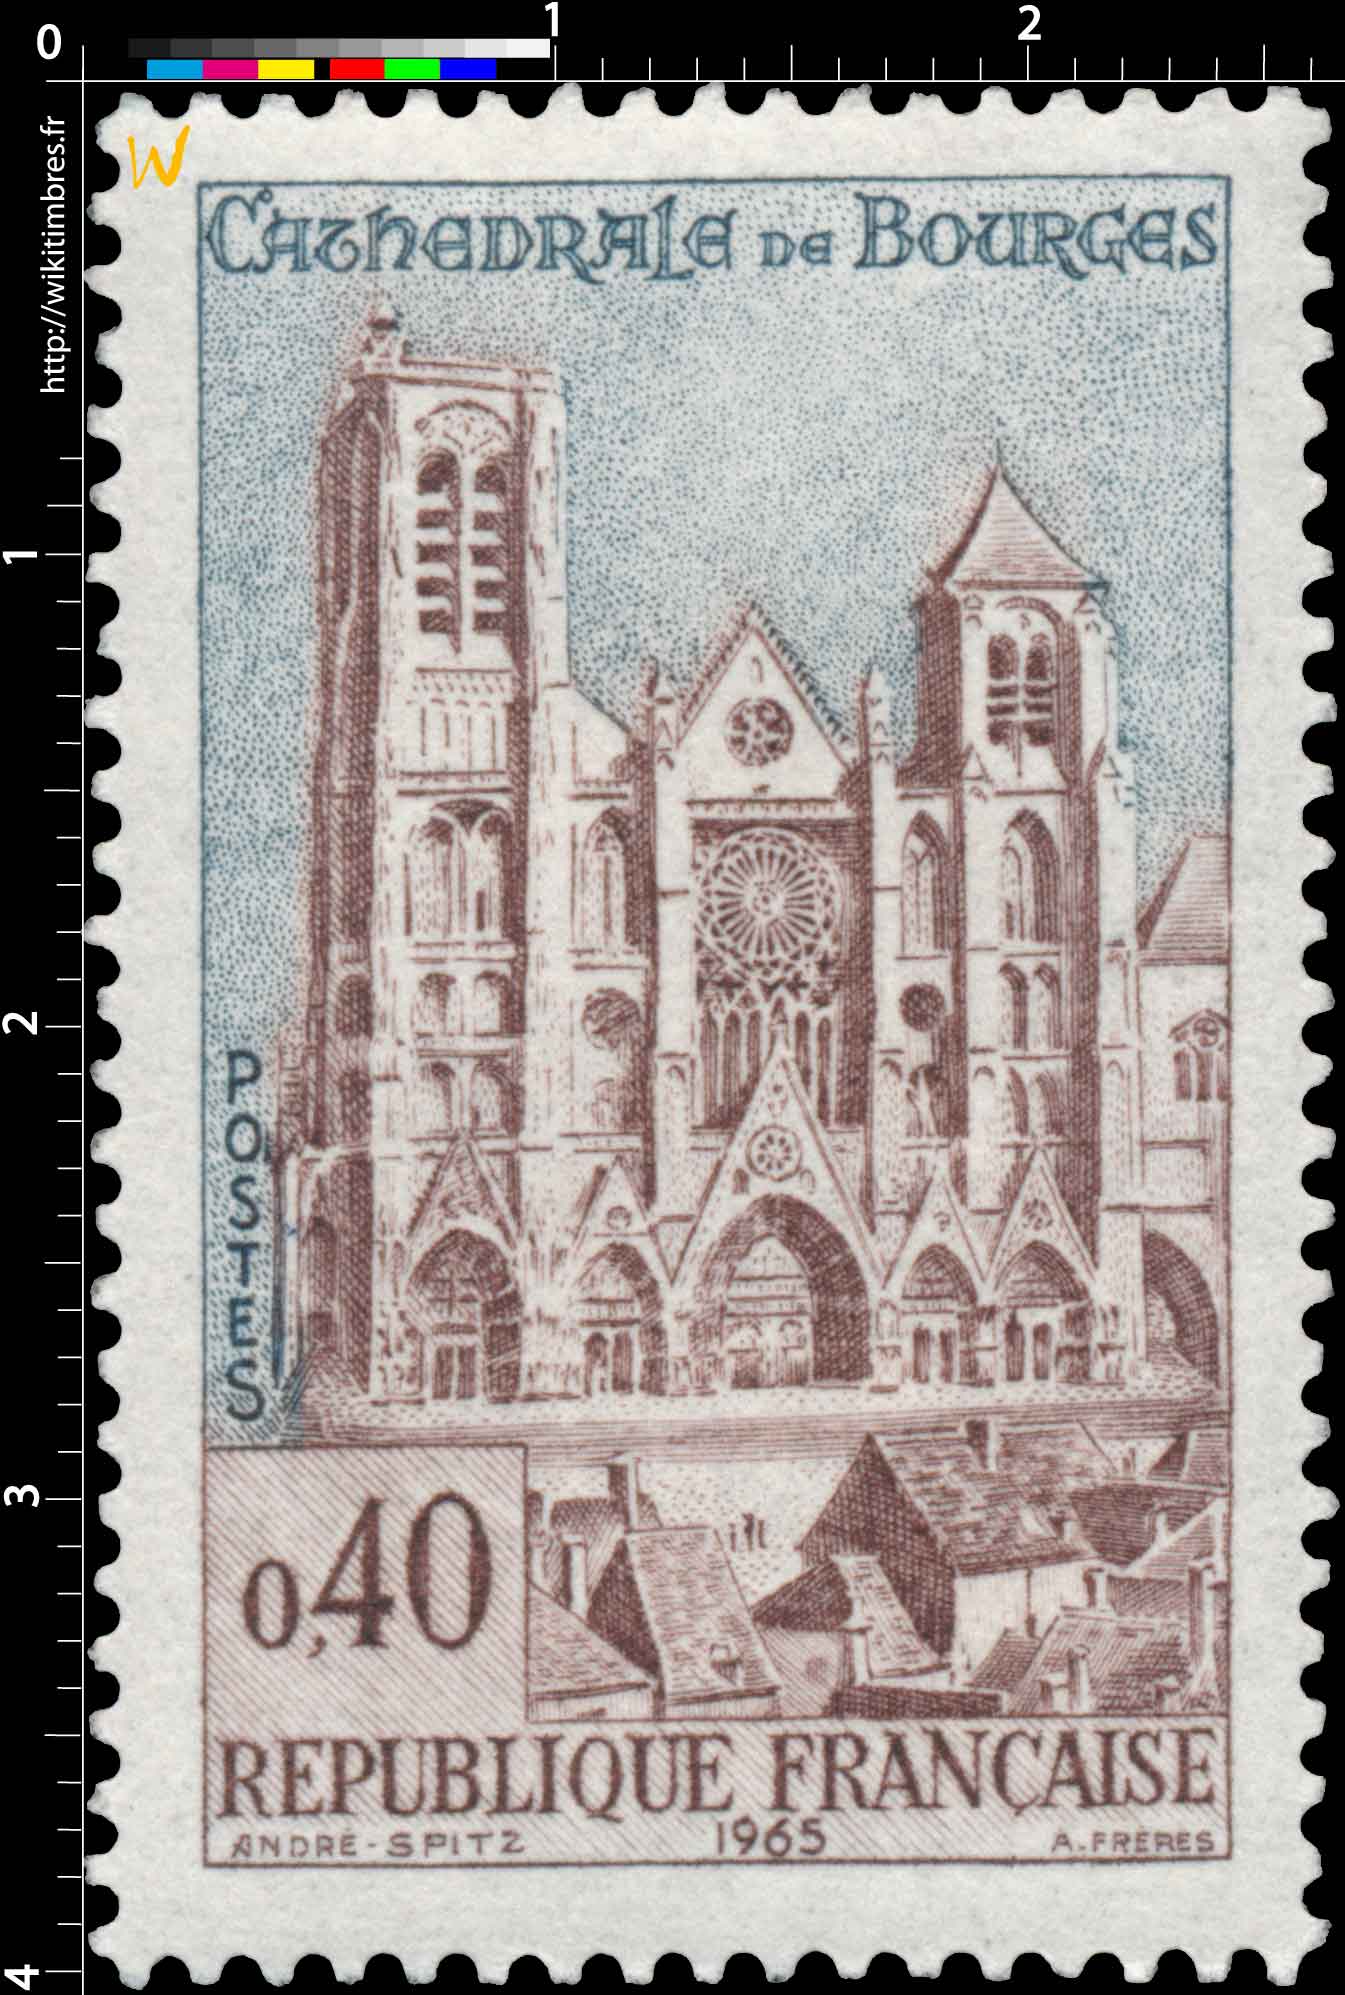 1965 CATHÉDRALE DE BOURGES